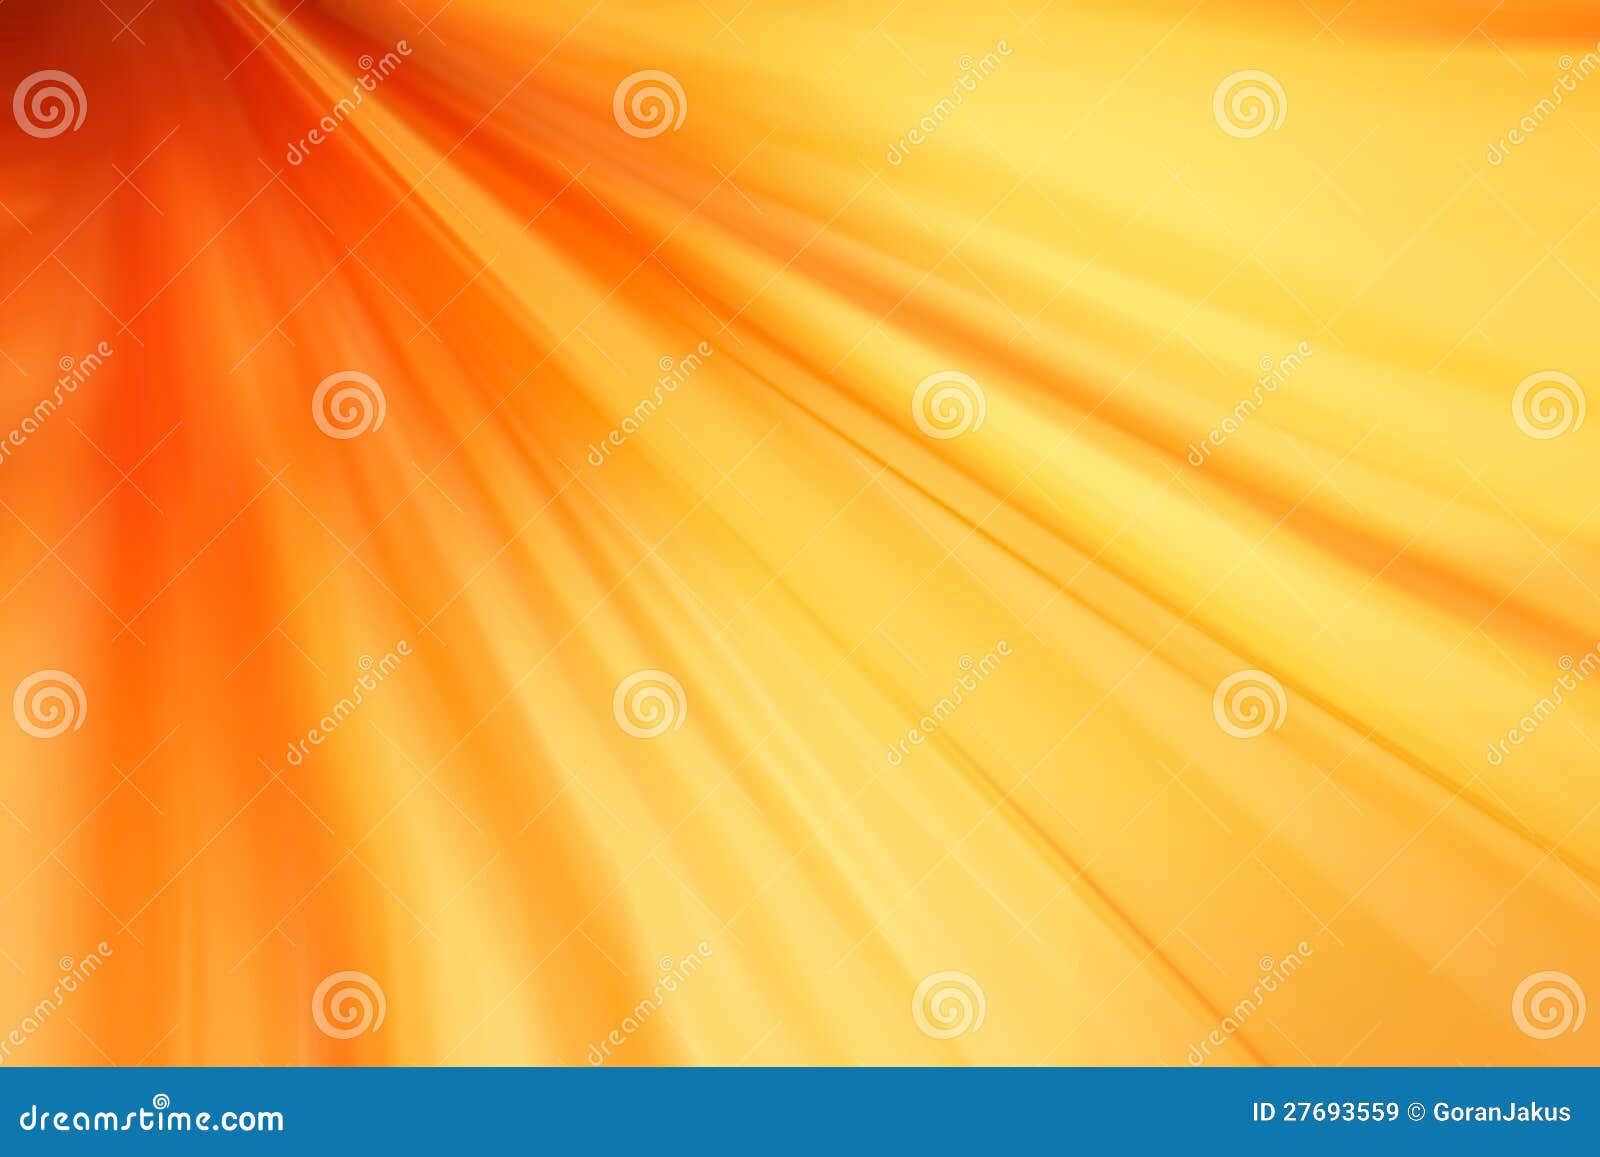 Abstracte Oranje Achtergrond Stock Illustratie - Illustratie bestaande